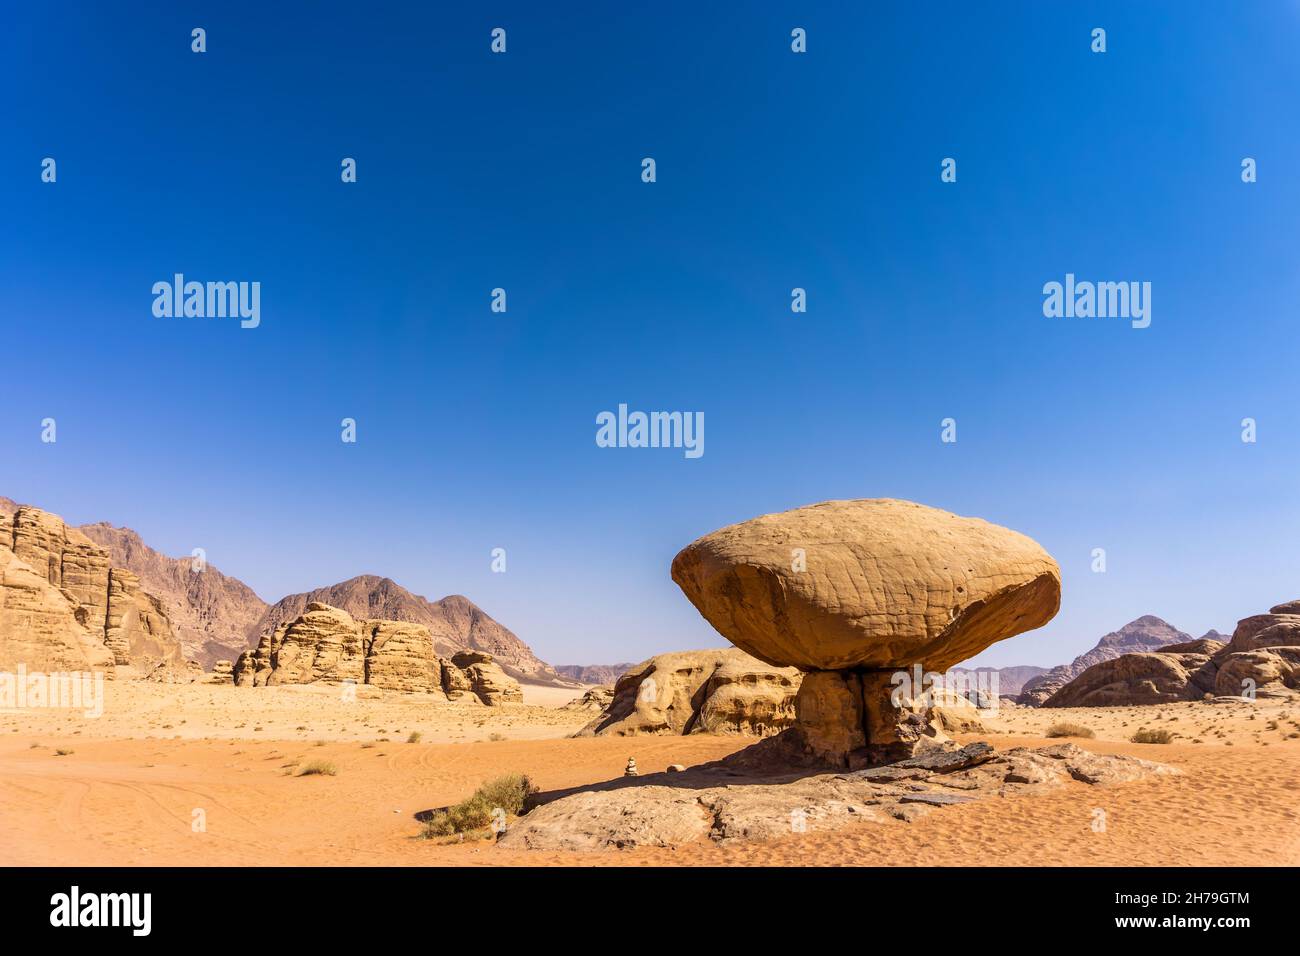 View of the famous mushroom rock in Wadi Rum, Jordan Stock Photo